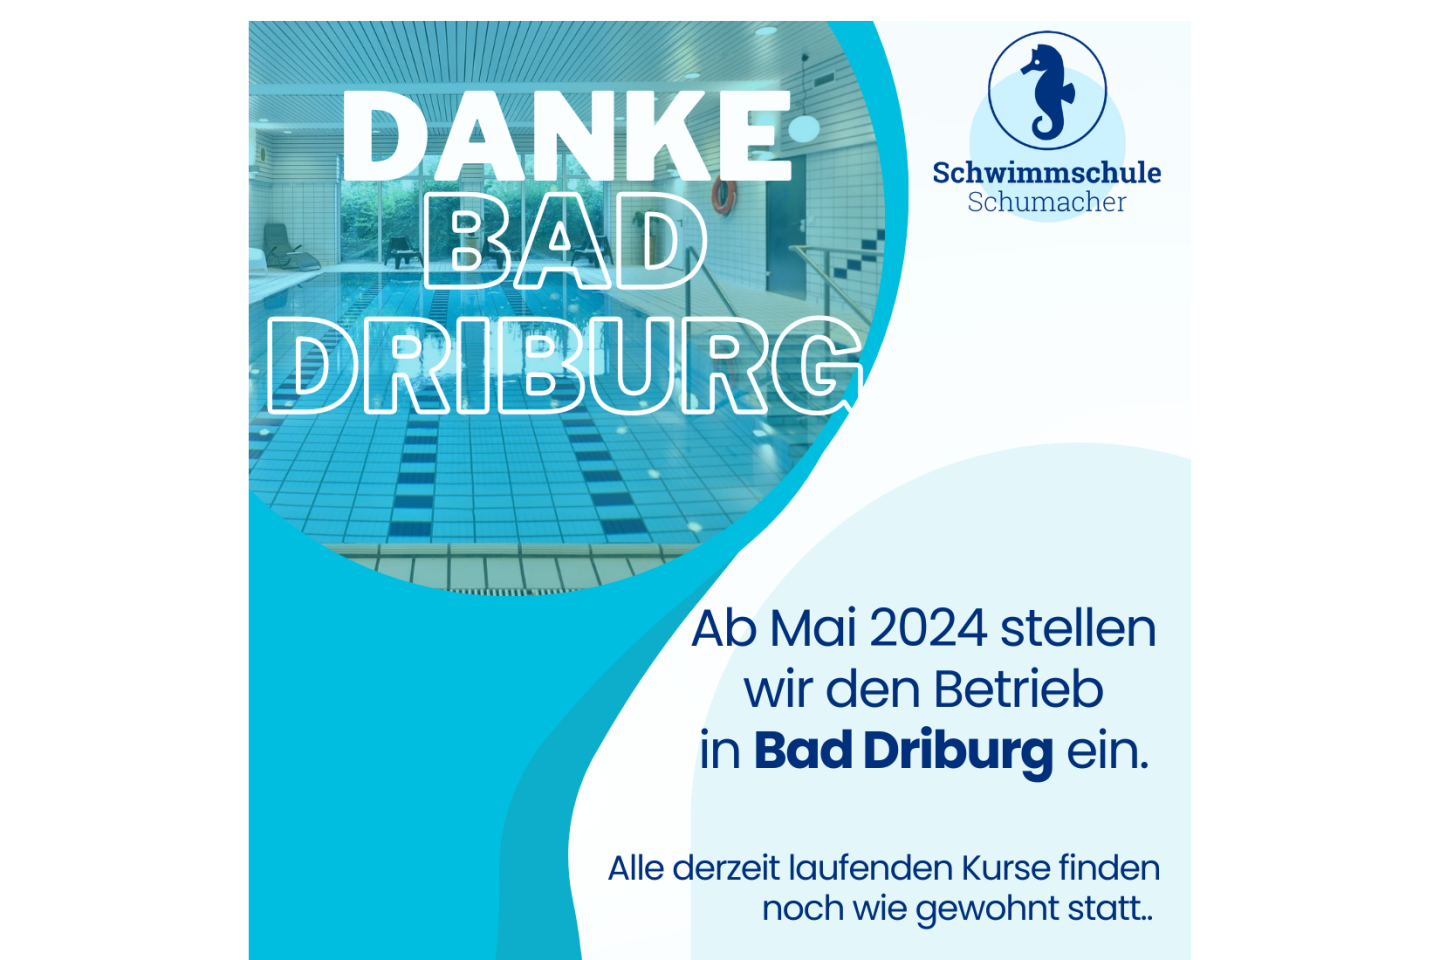 Die Schwimmschule Schumacher stellt ab Mai 2024 den Betrieb in Bad Driburg ein